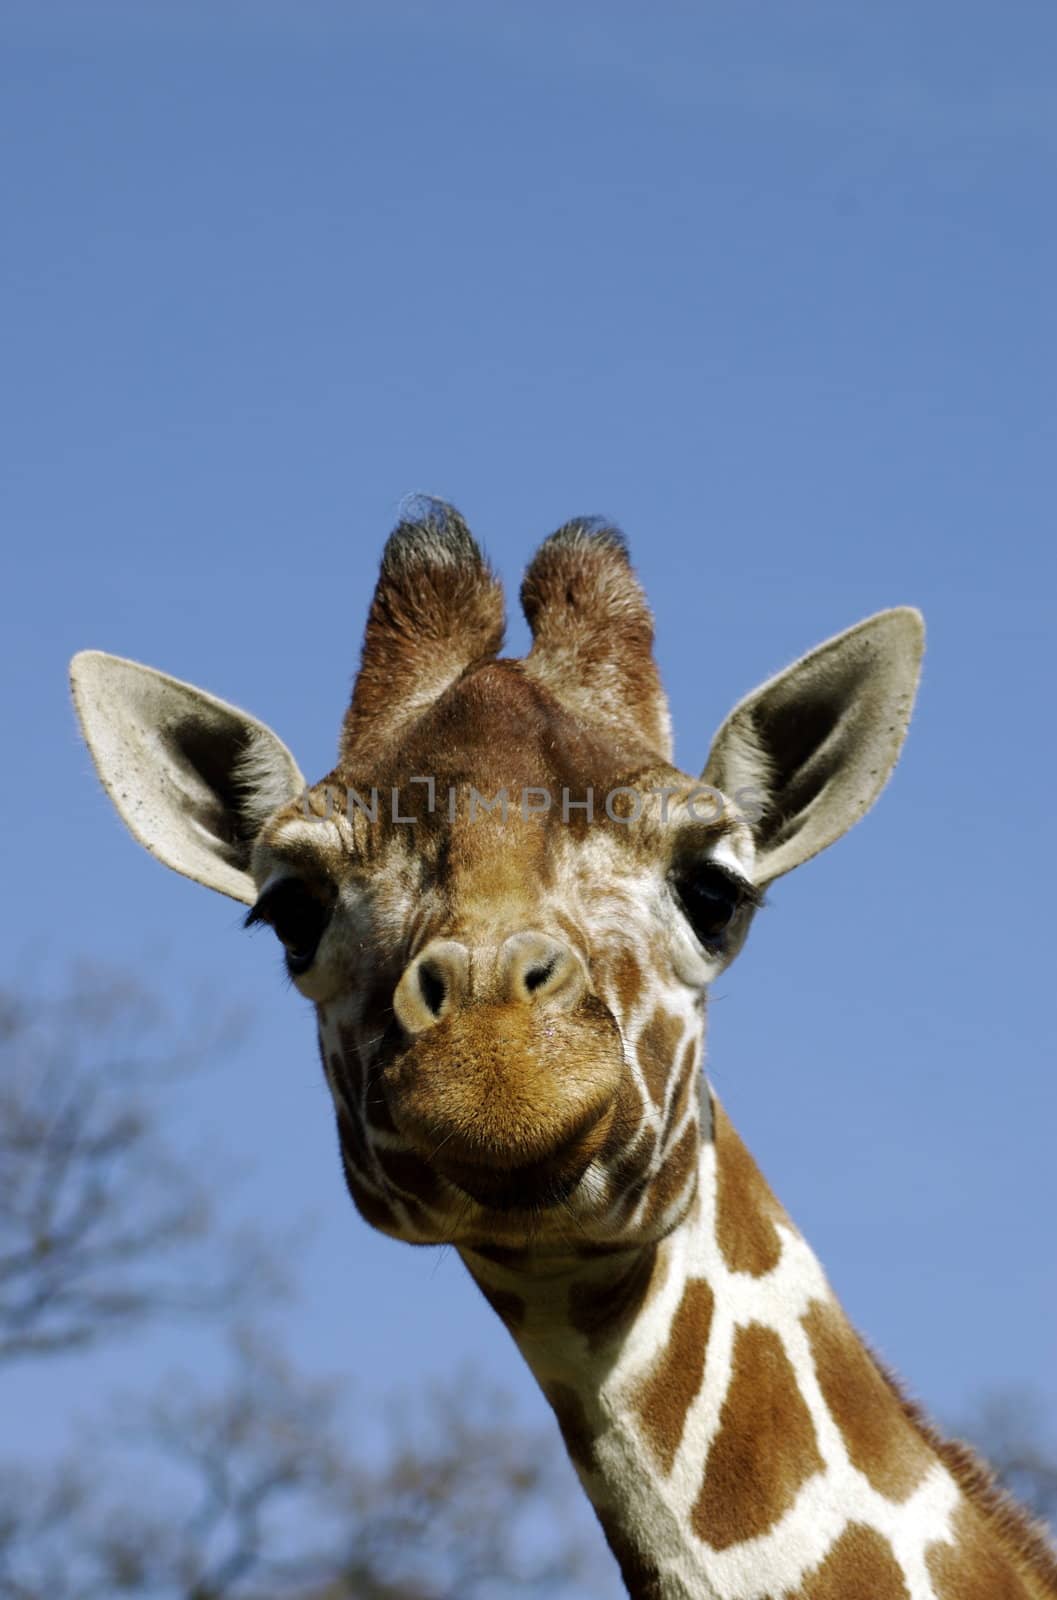 Giraffe Head & Neck by PrincessToula